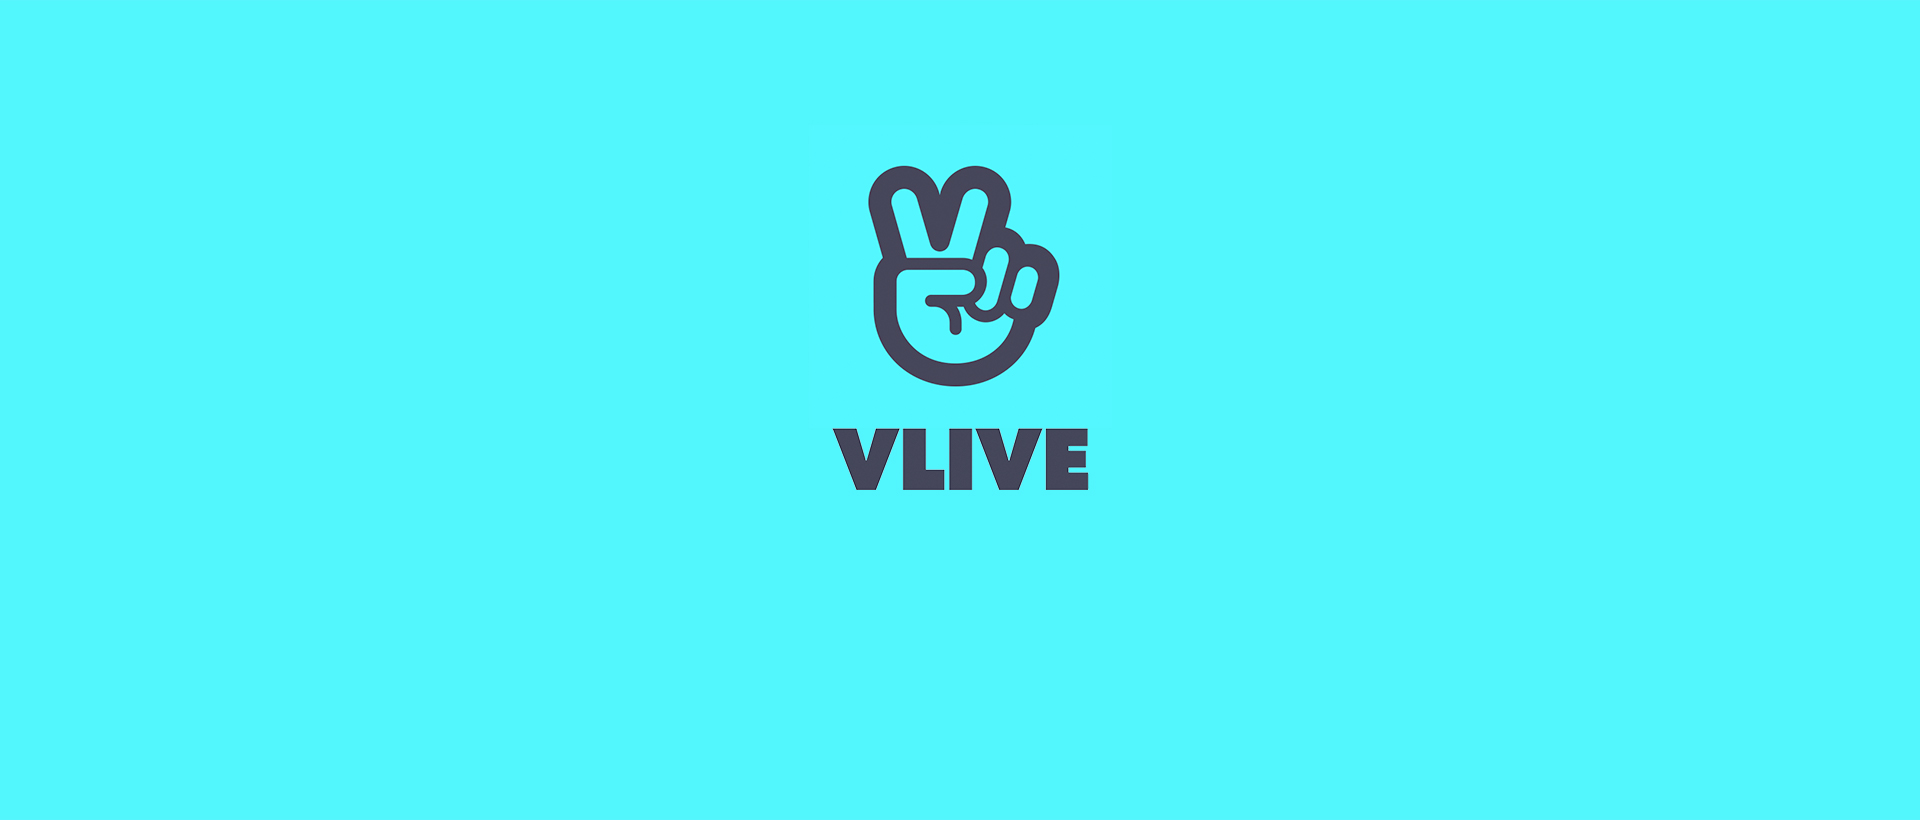 V LIVE PC 버전, 컴퓨터에서 설치하고 안전하게 즐기자 - 녹스 앱플레이어